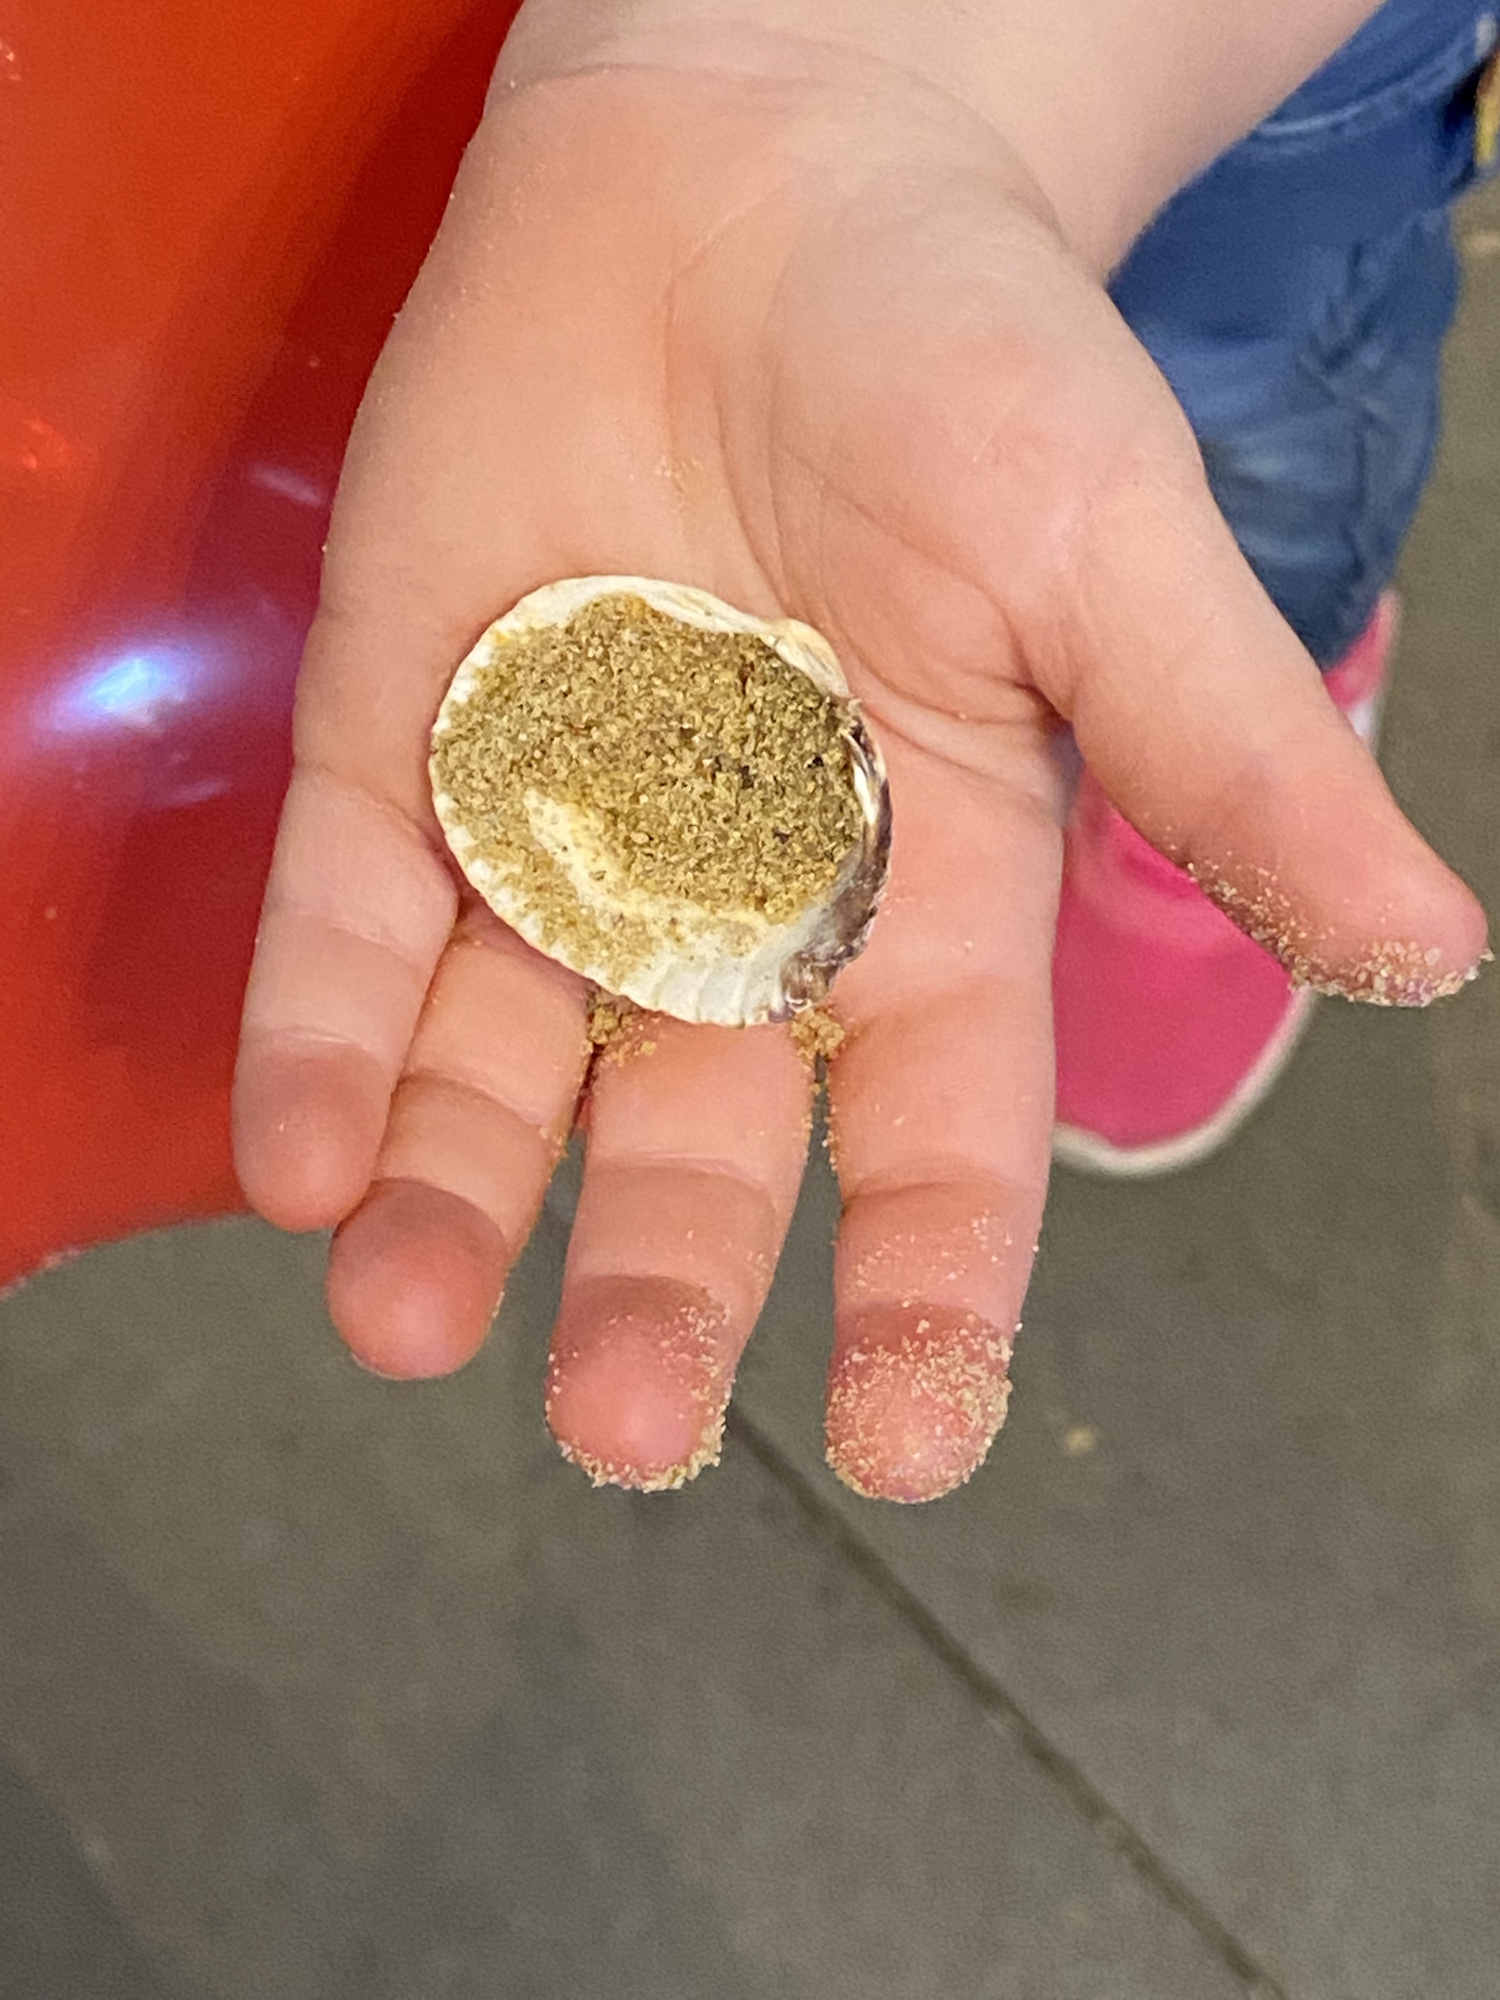 Kinder dürfen eine Muschel mitnehmen, die sie im Sand gefunden haben. (c) Garnet Manecke